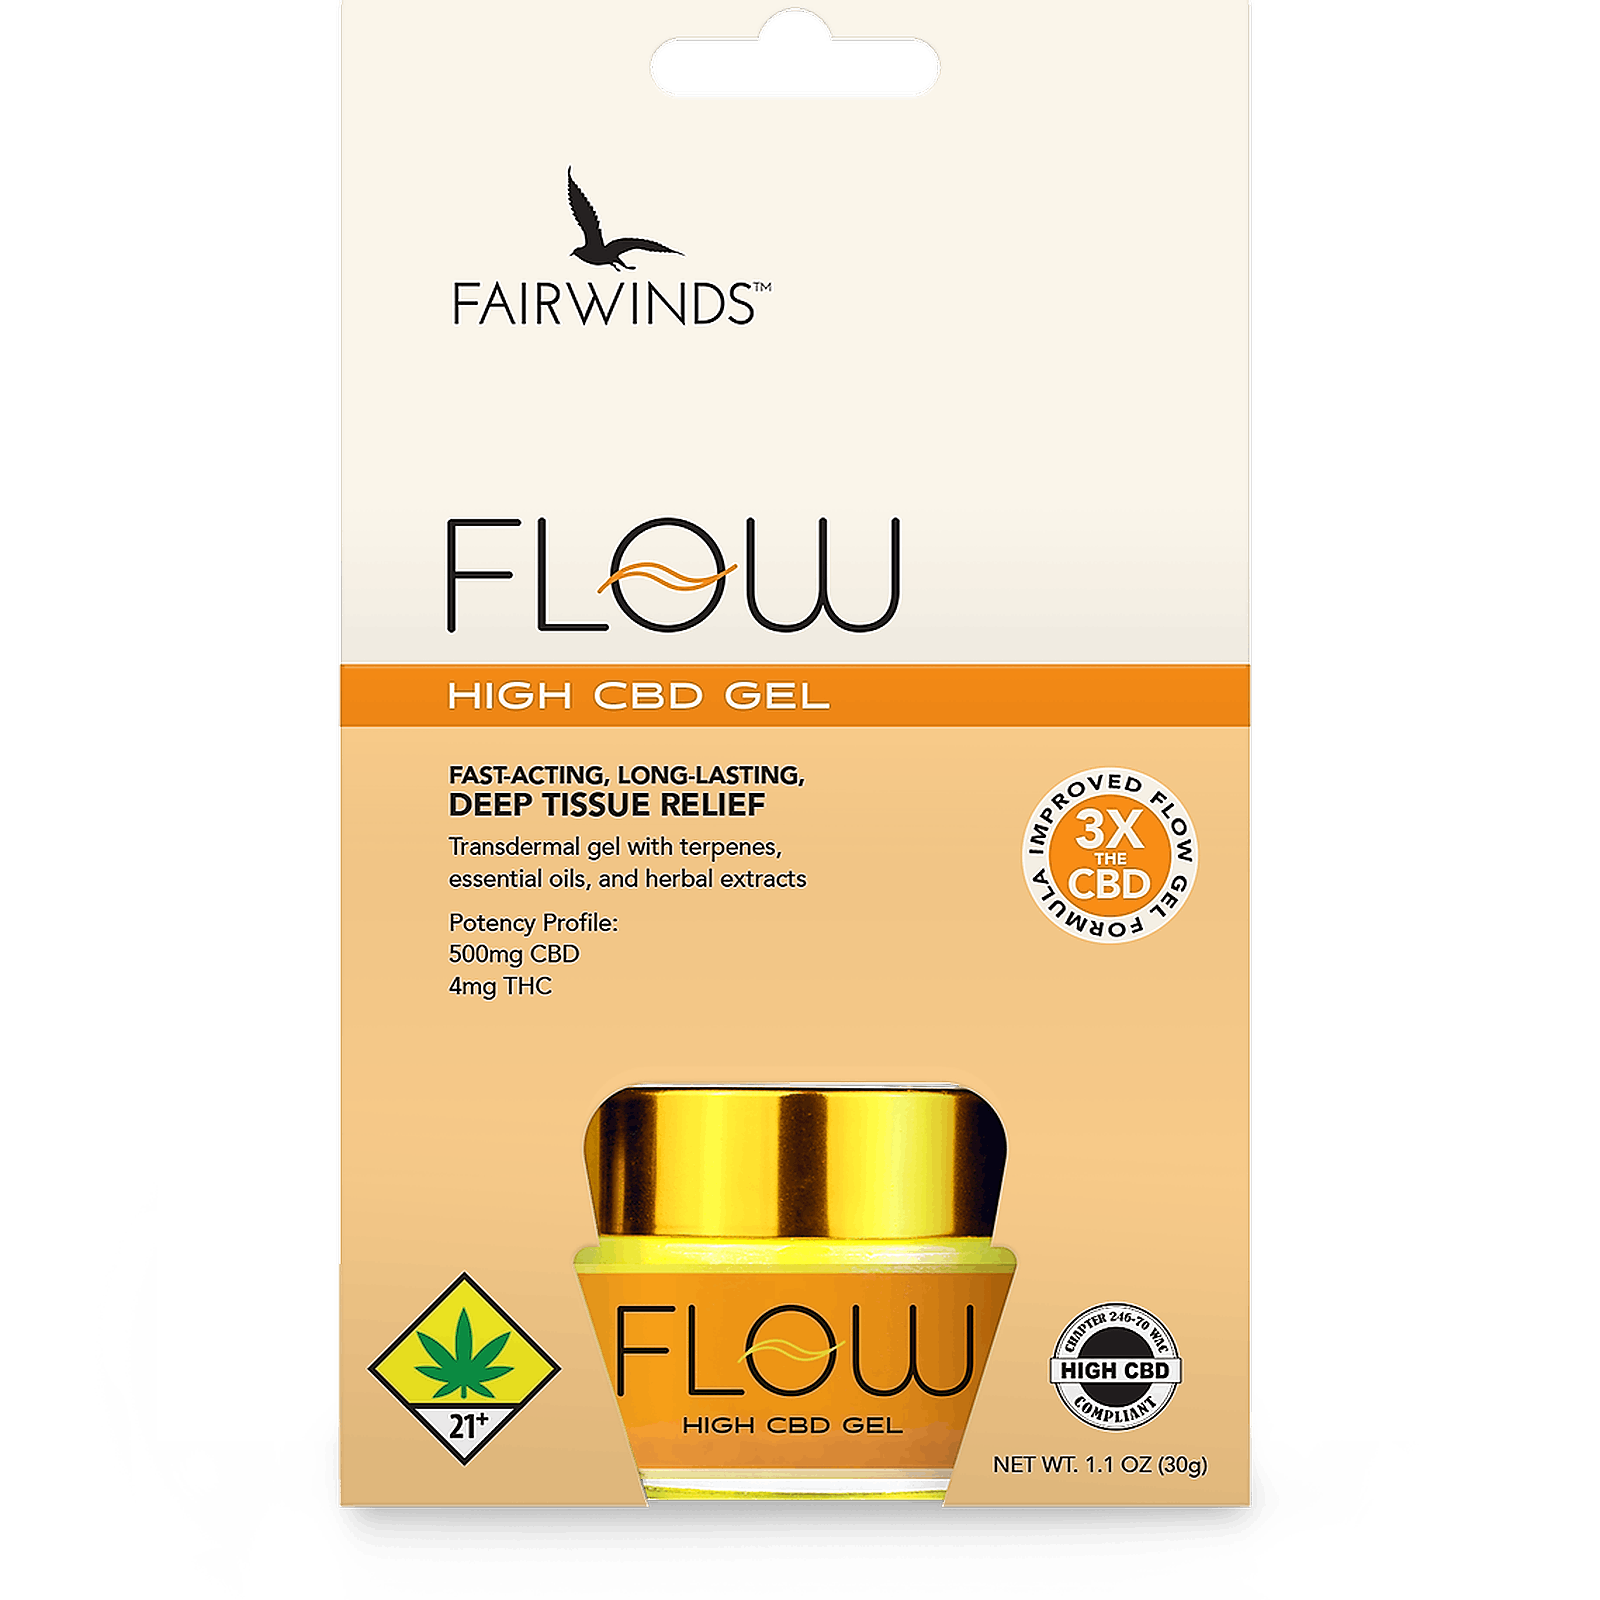 Flow cbd gel ingredients